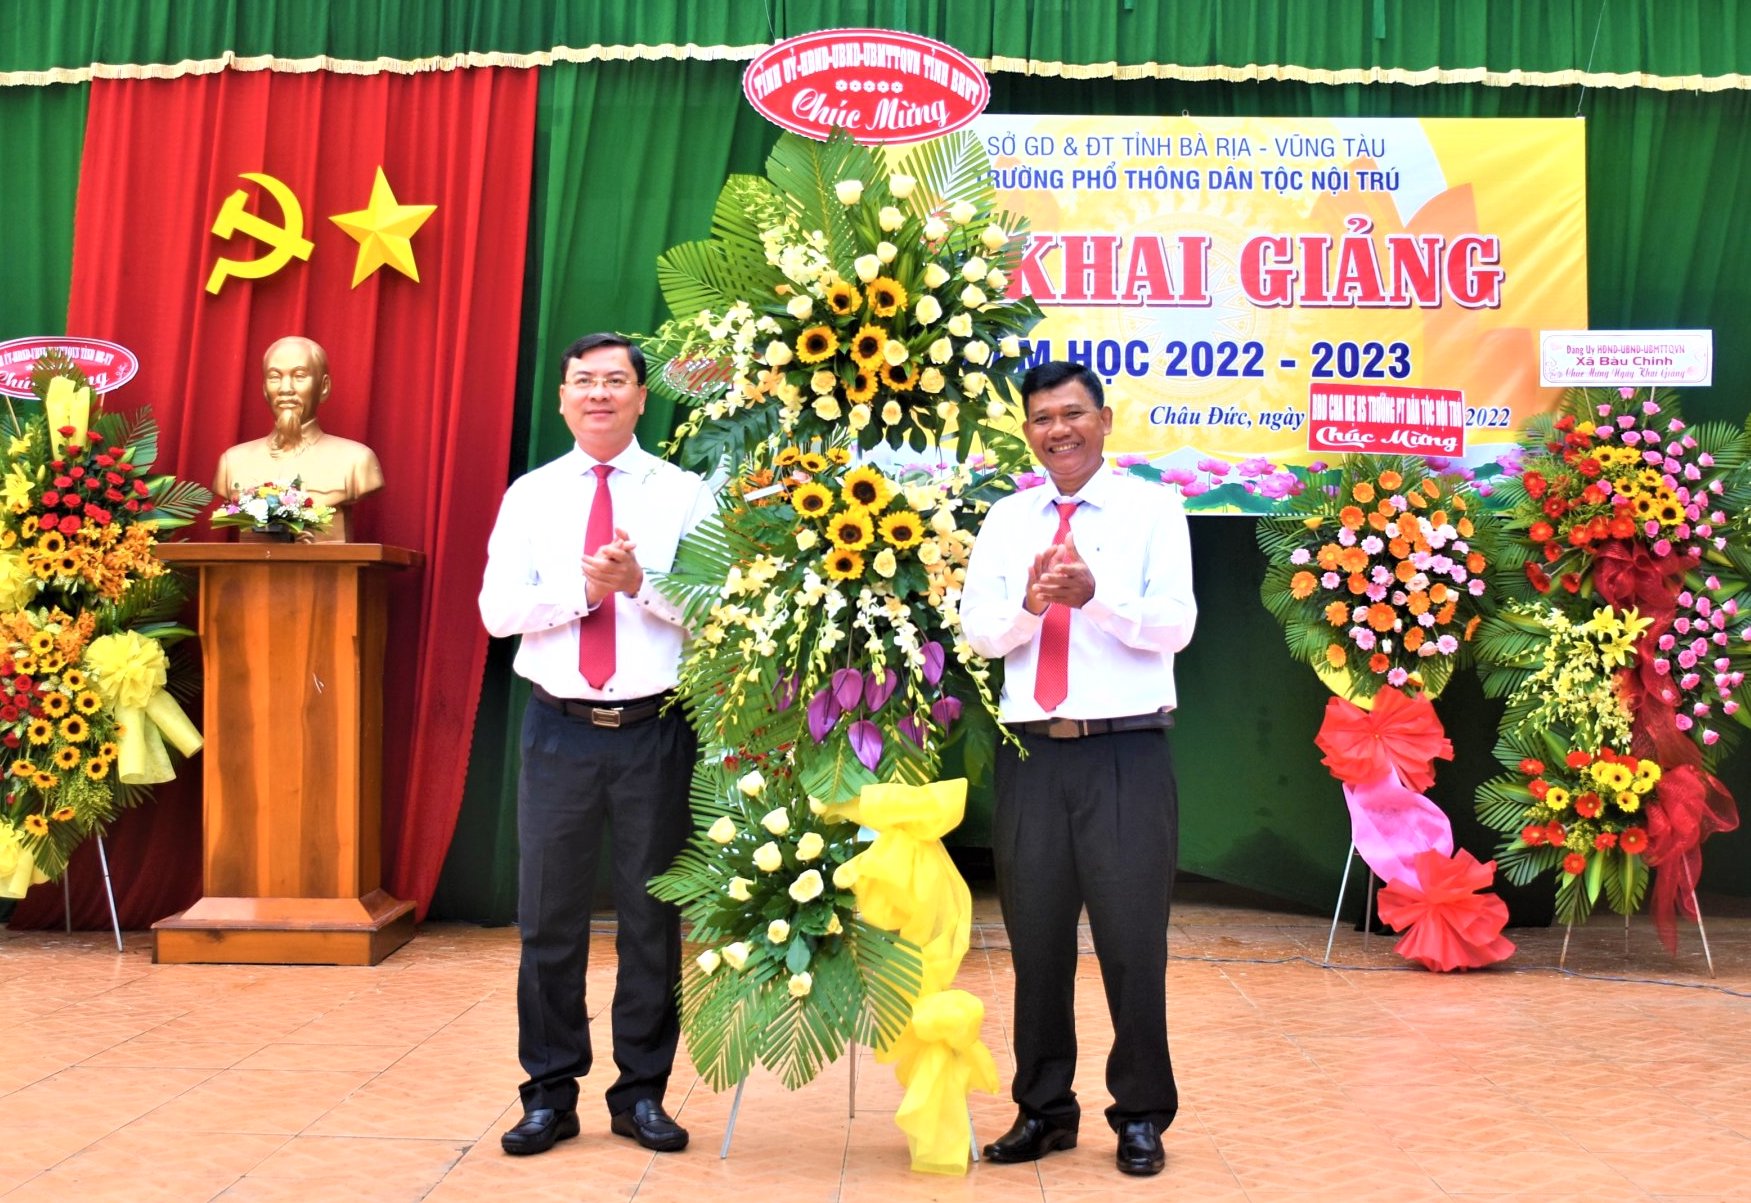 Ông Nguyễn Công Vinh, Phó Chủ tịch UBND tỉnh tặng hoa của Tỉnh ủy-HĐND-UBND-UBMTTQVN tỉnh cho lãnh đạo Trường Phổ thông Dân tộc nội trú tỉnh trong lễ khai giảng năm học 2022-2023.